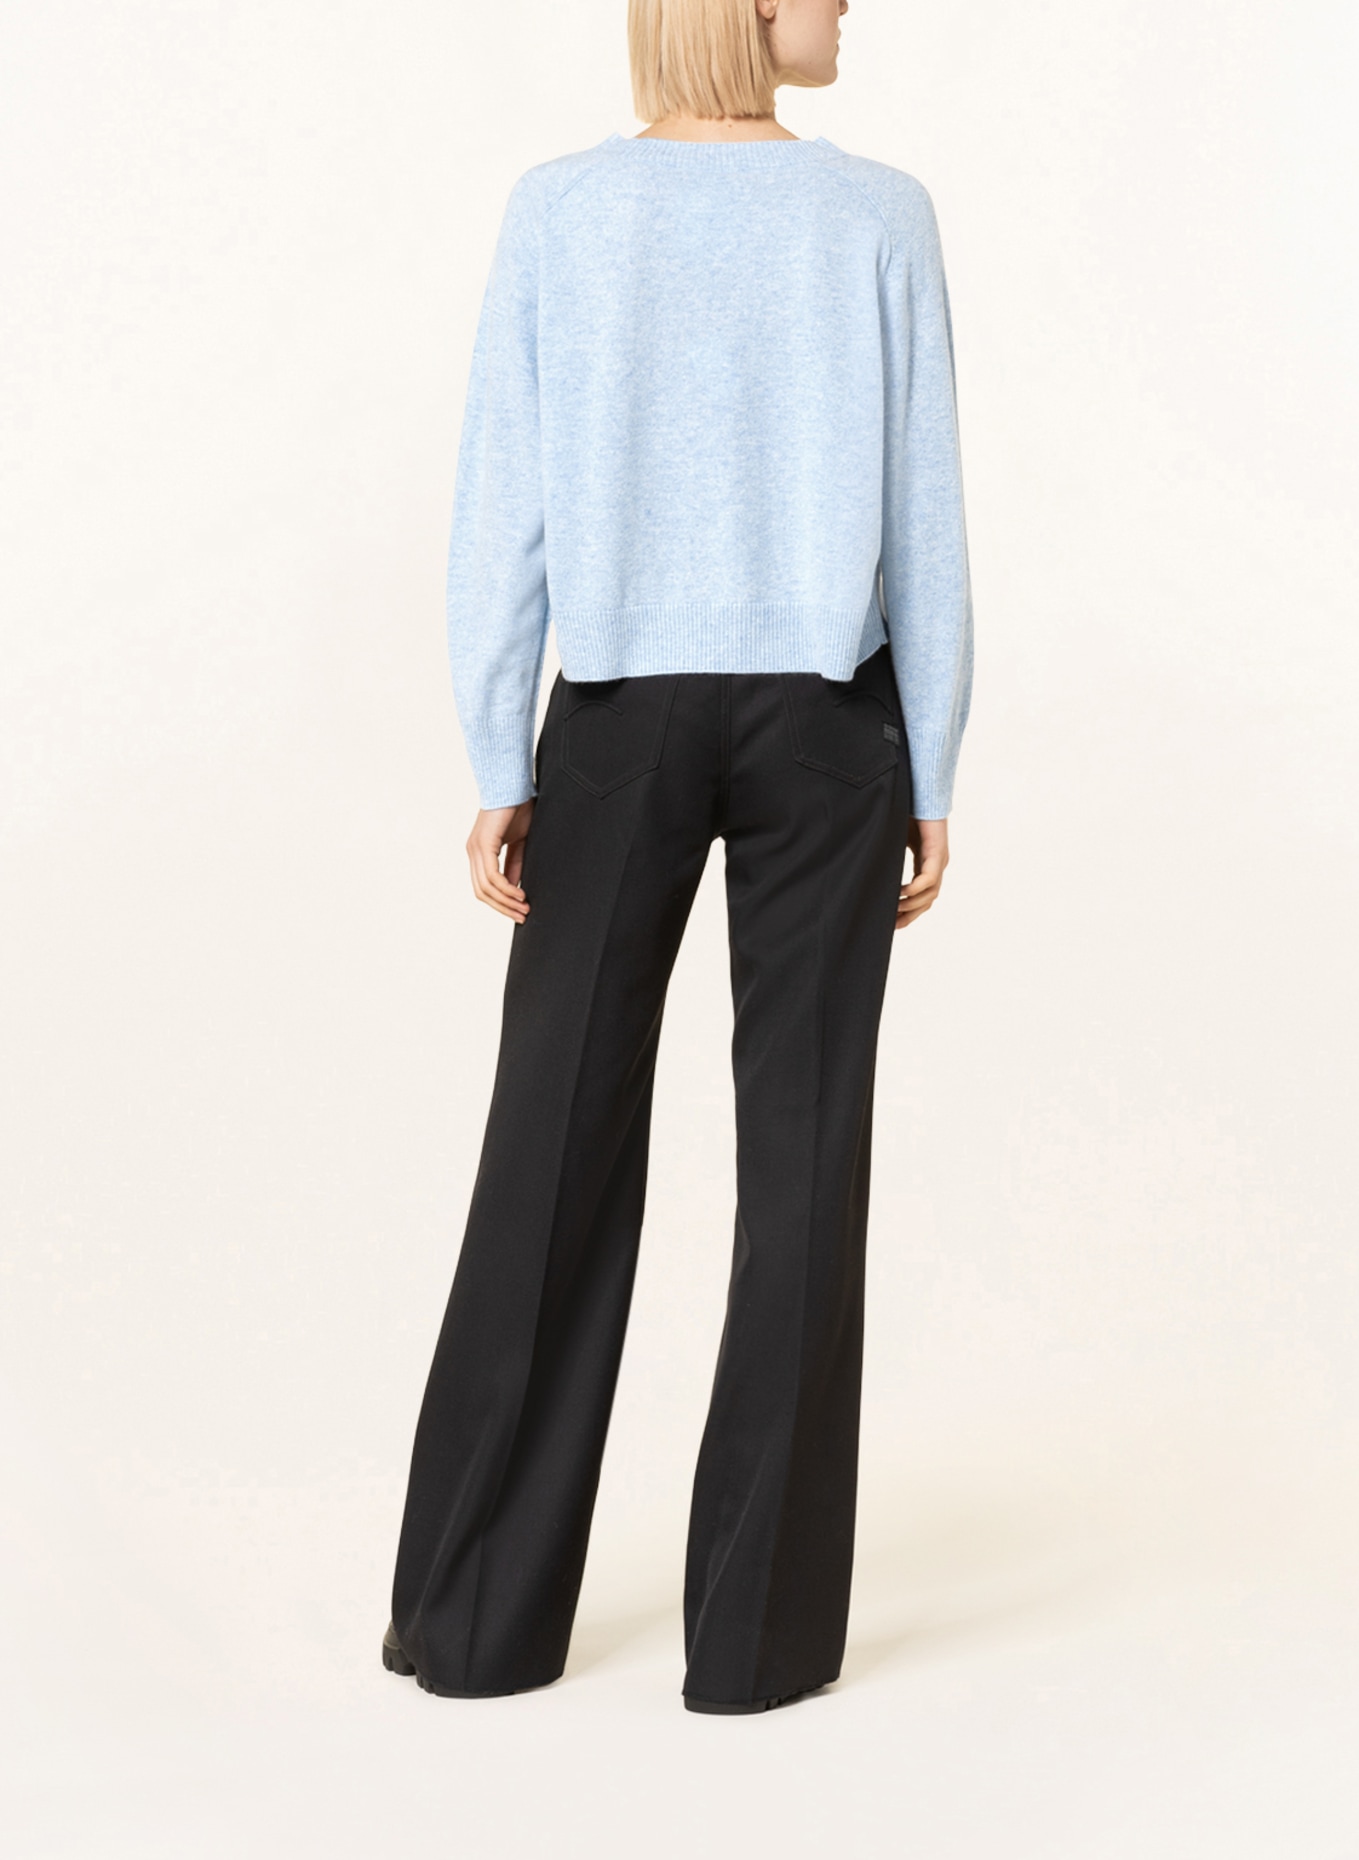 REPEAT Cashmere-Pullover, Farbe: HELLBLAU (Bild 3)